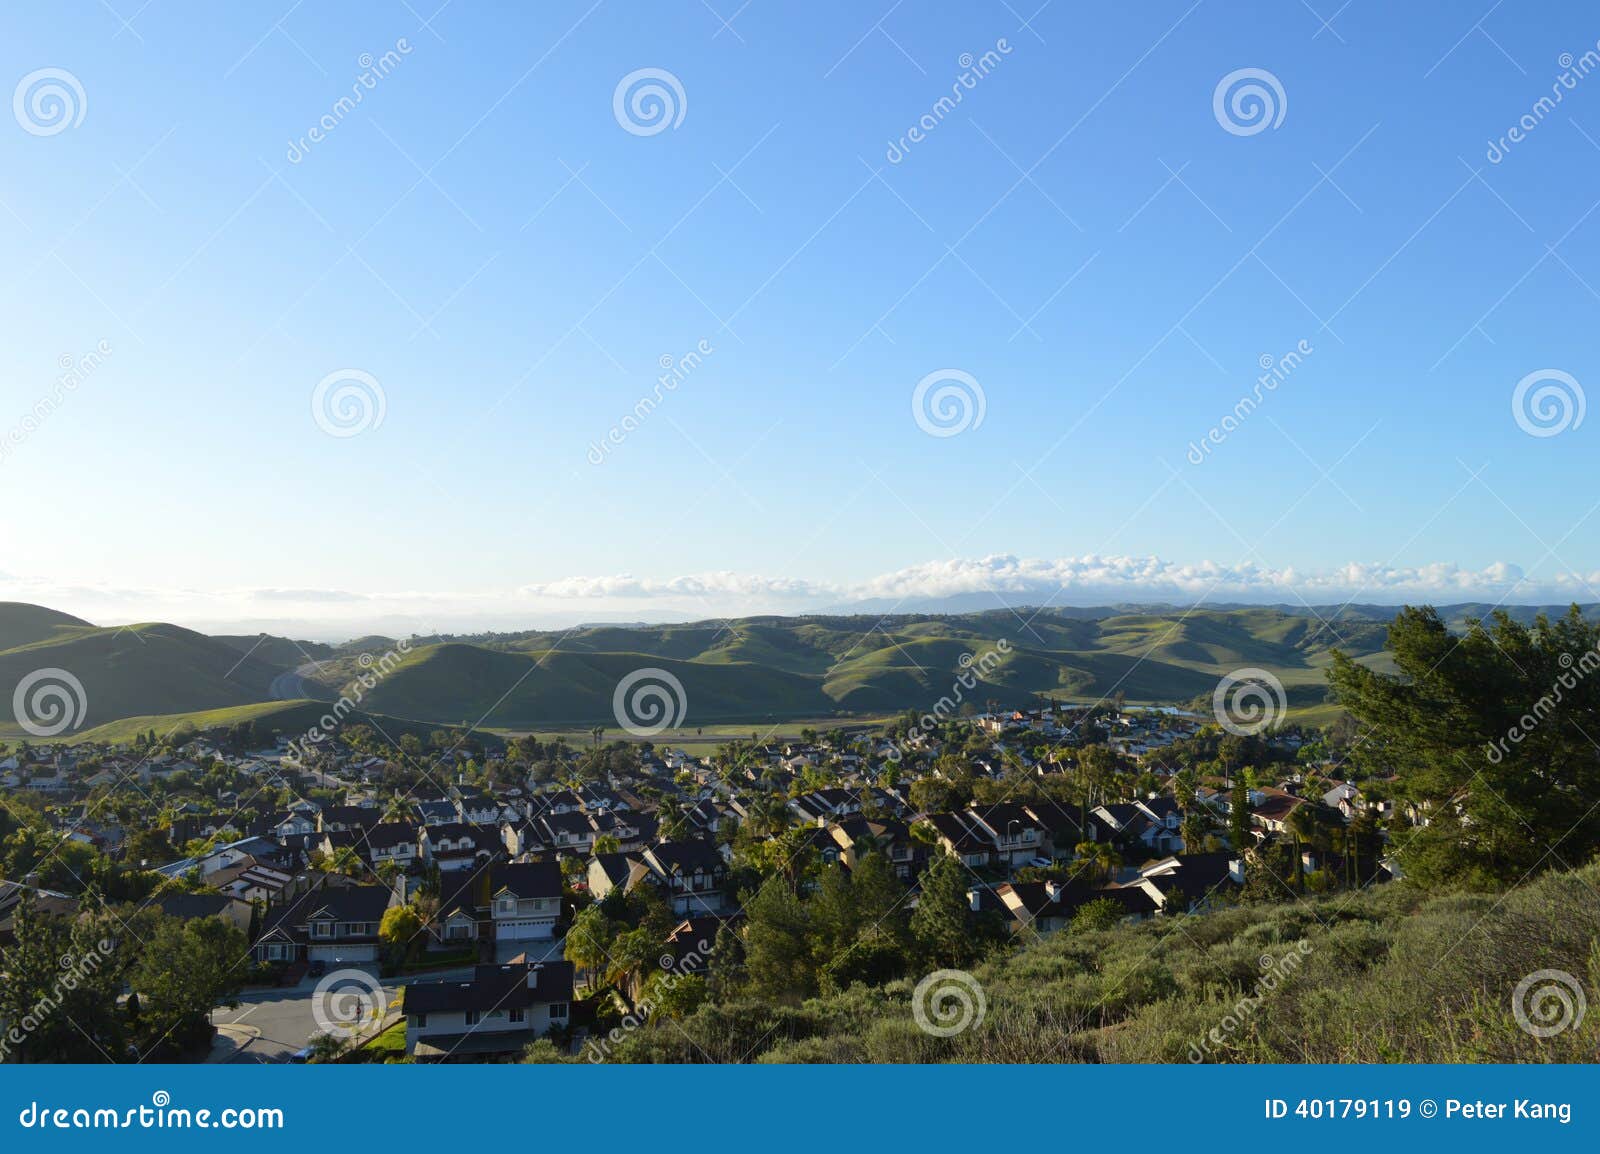 chino hills california